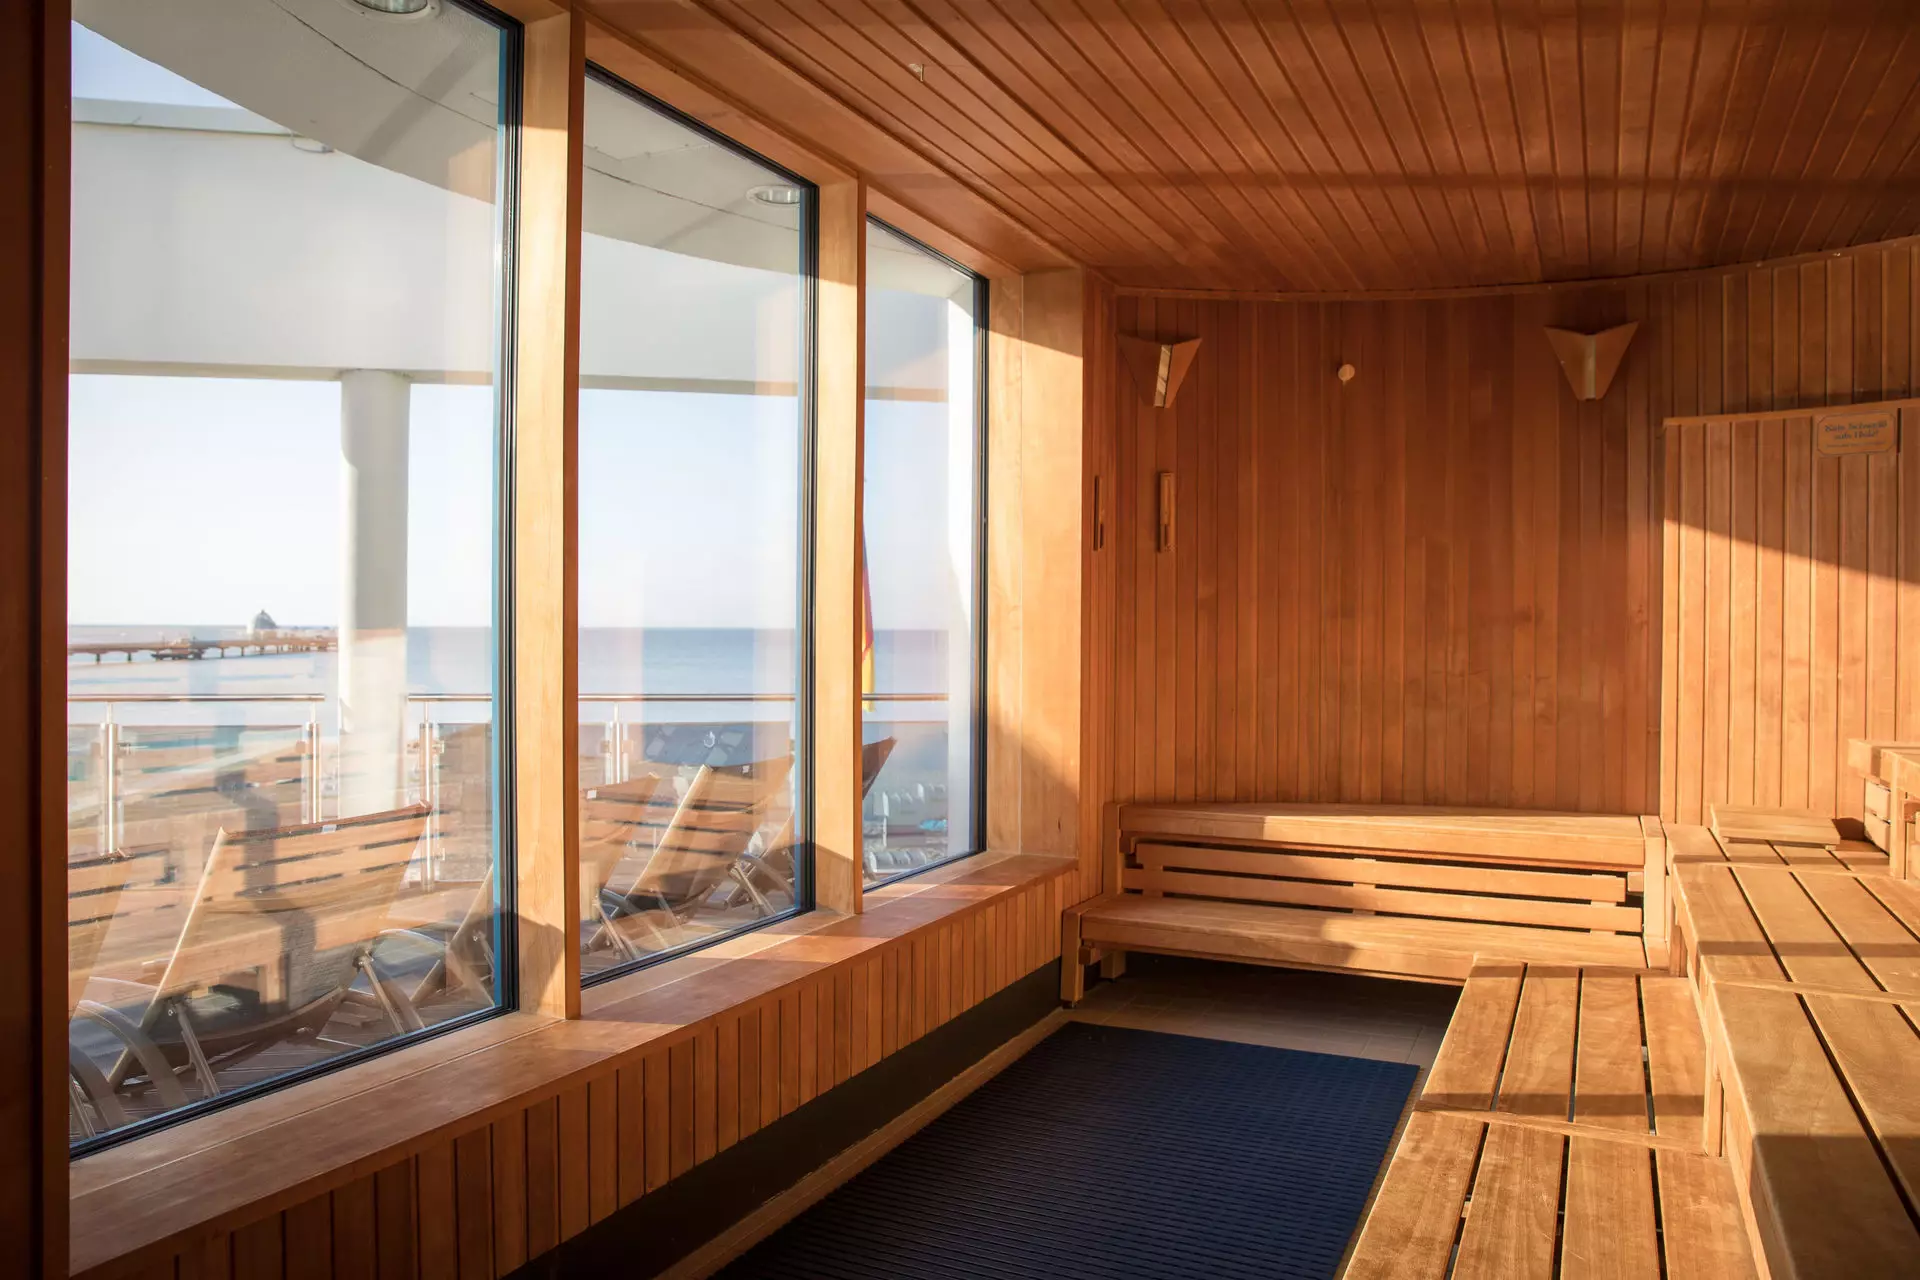 Ausblick aus einer hölzernen Sauna hinaus durch drei breite Panoramafenster auf den Sandstrand und das Wasser der Ostsee.